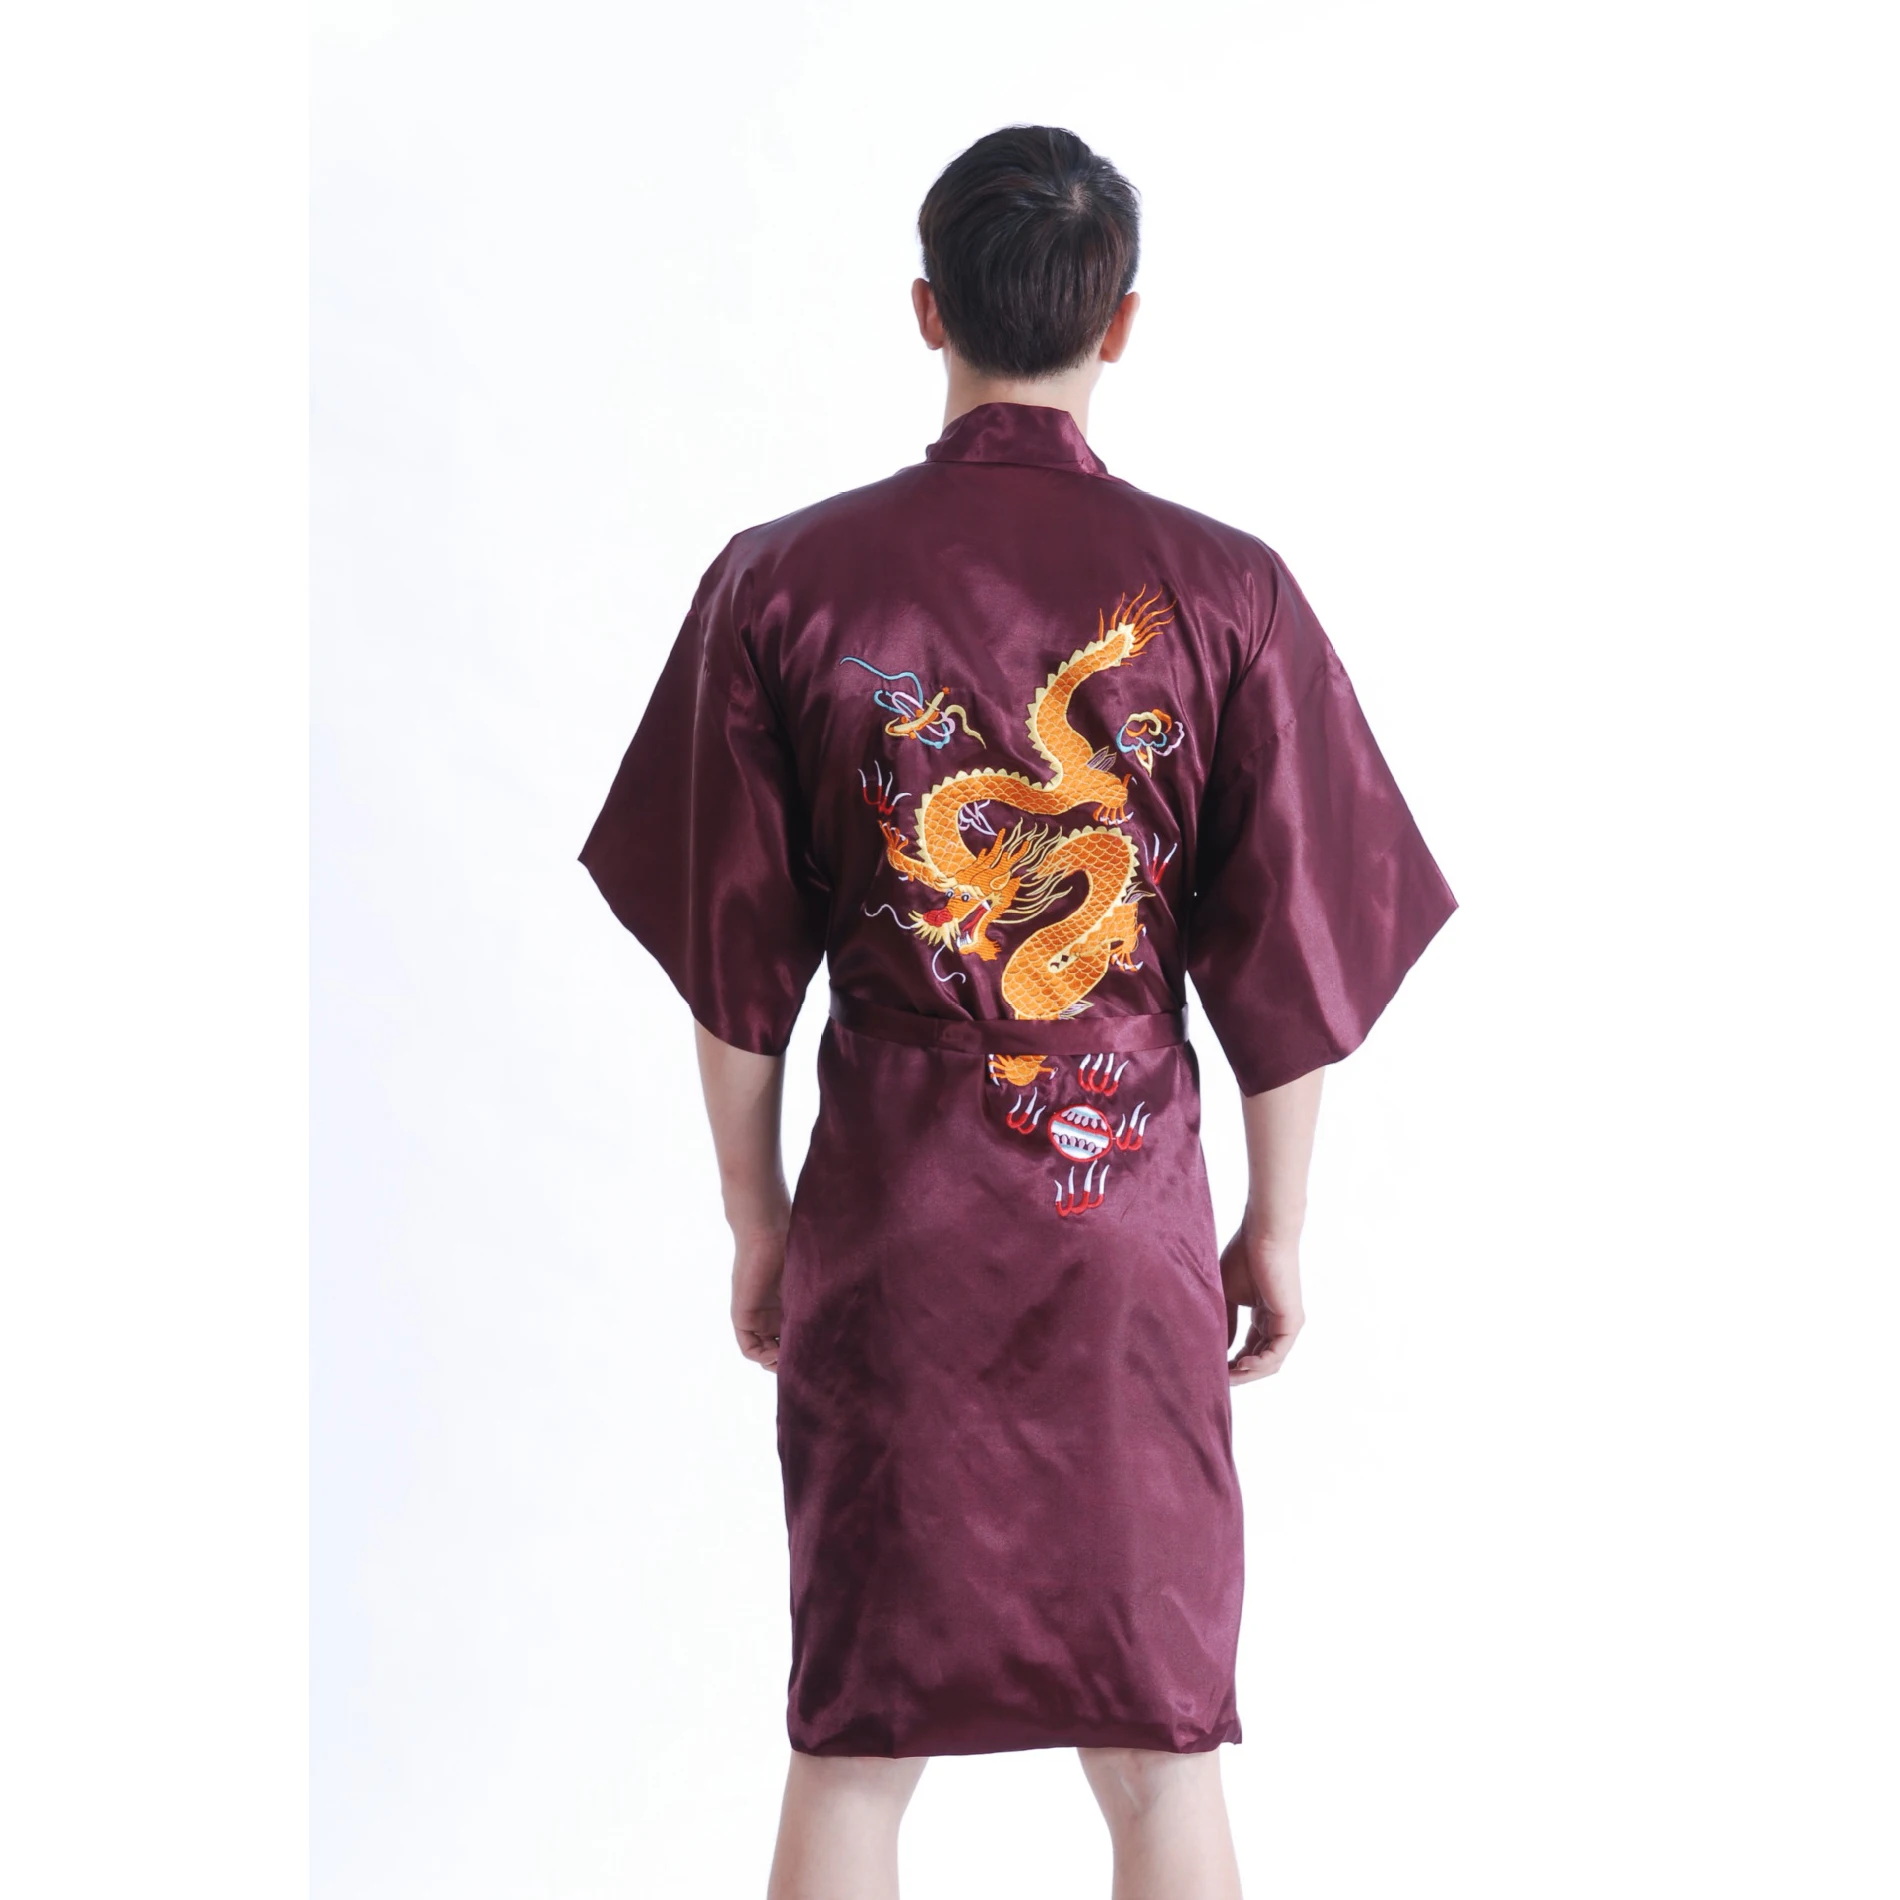 Китайский стиль, вышитый халат с рисунком драконов, Мужской Шелковый Атласный халат, Мужская одежда для сна с поясом, Размеры S M L XL XXL XXXL